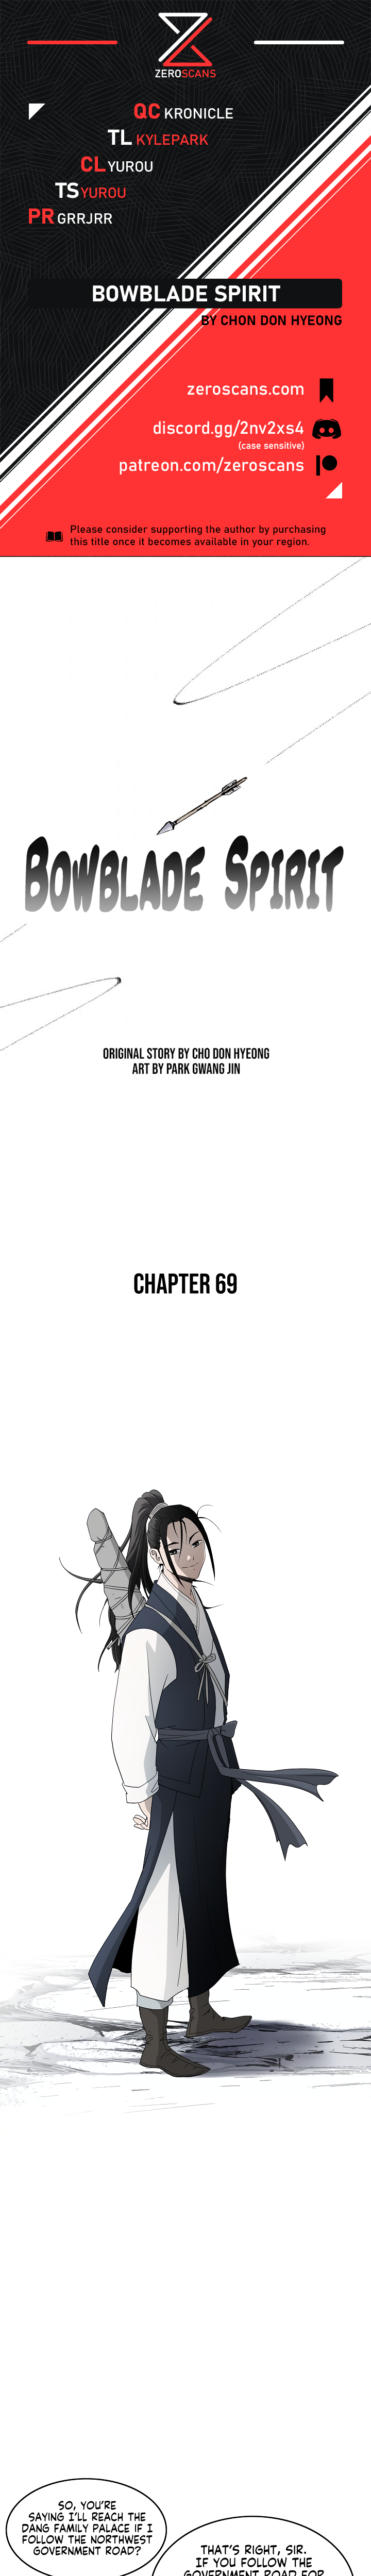 Bowblade Spirit - Chapter 6160 - Image 1